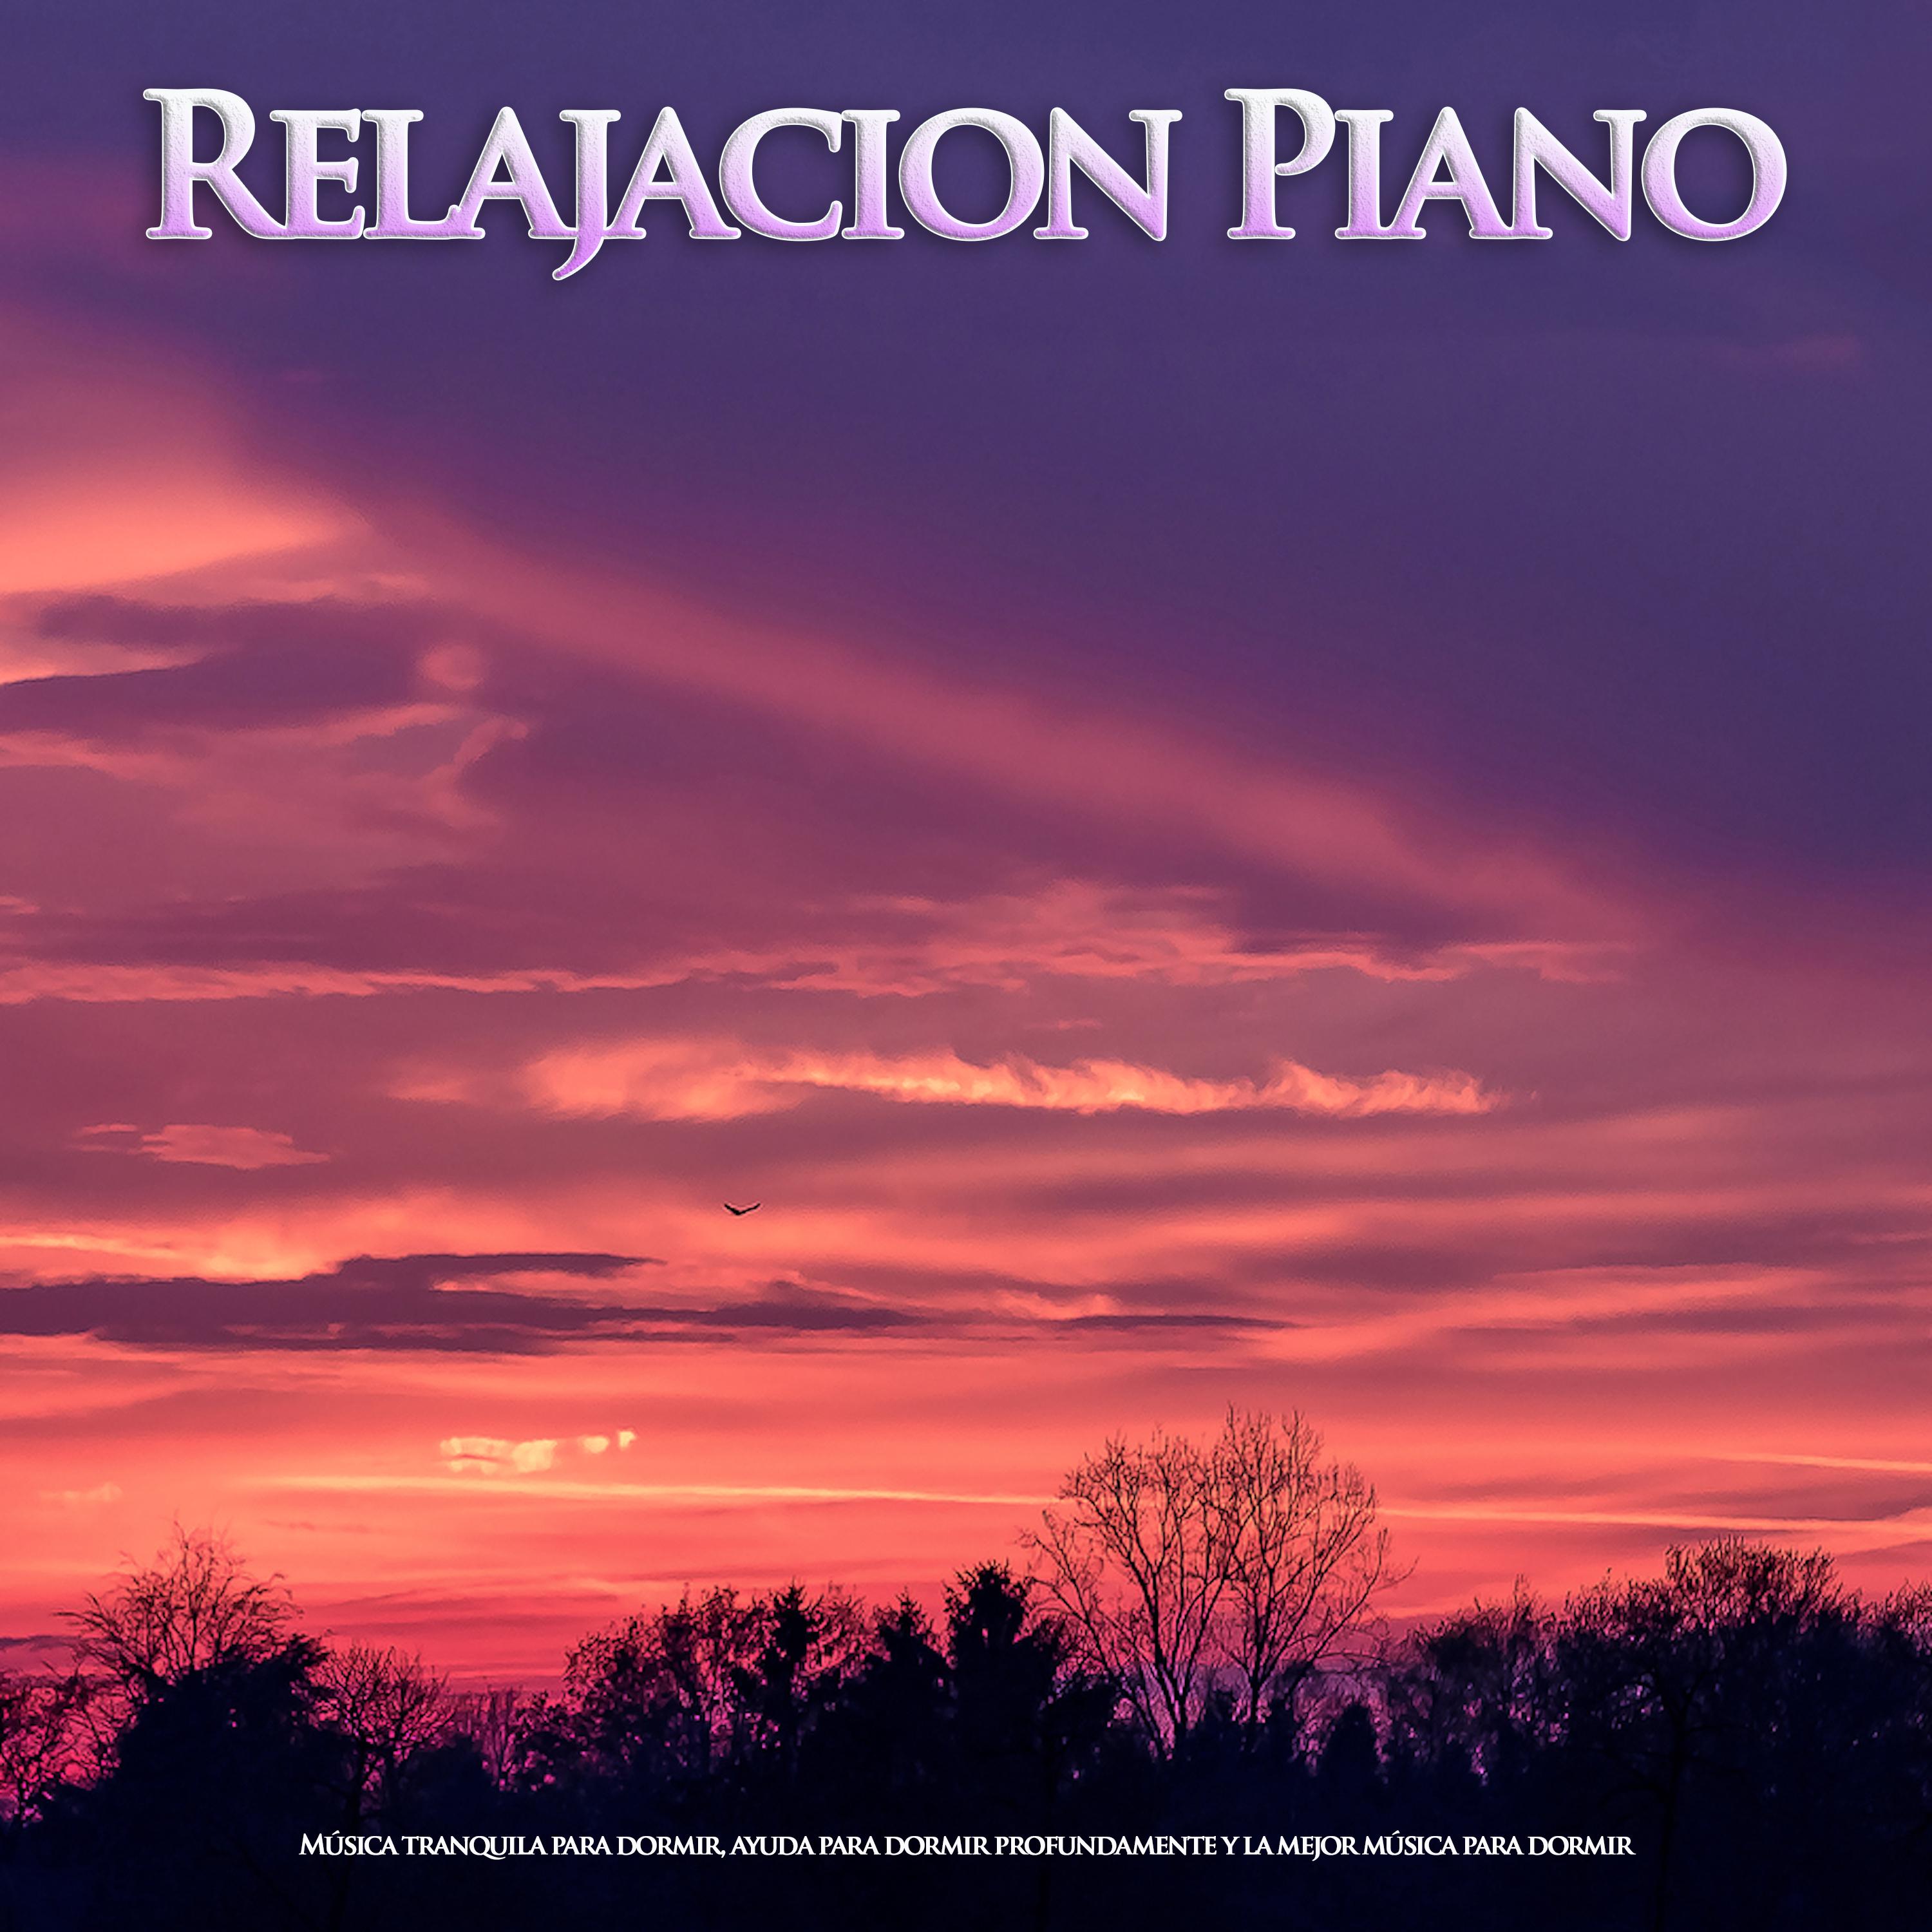 Relajacion Piano: Música tranquila para dormir, ayuda para dormir profundamente y la mejor música para dormir